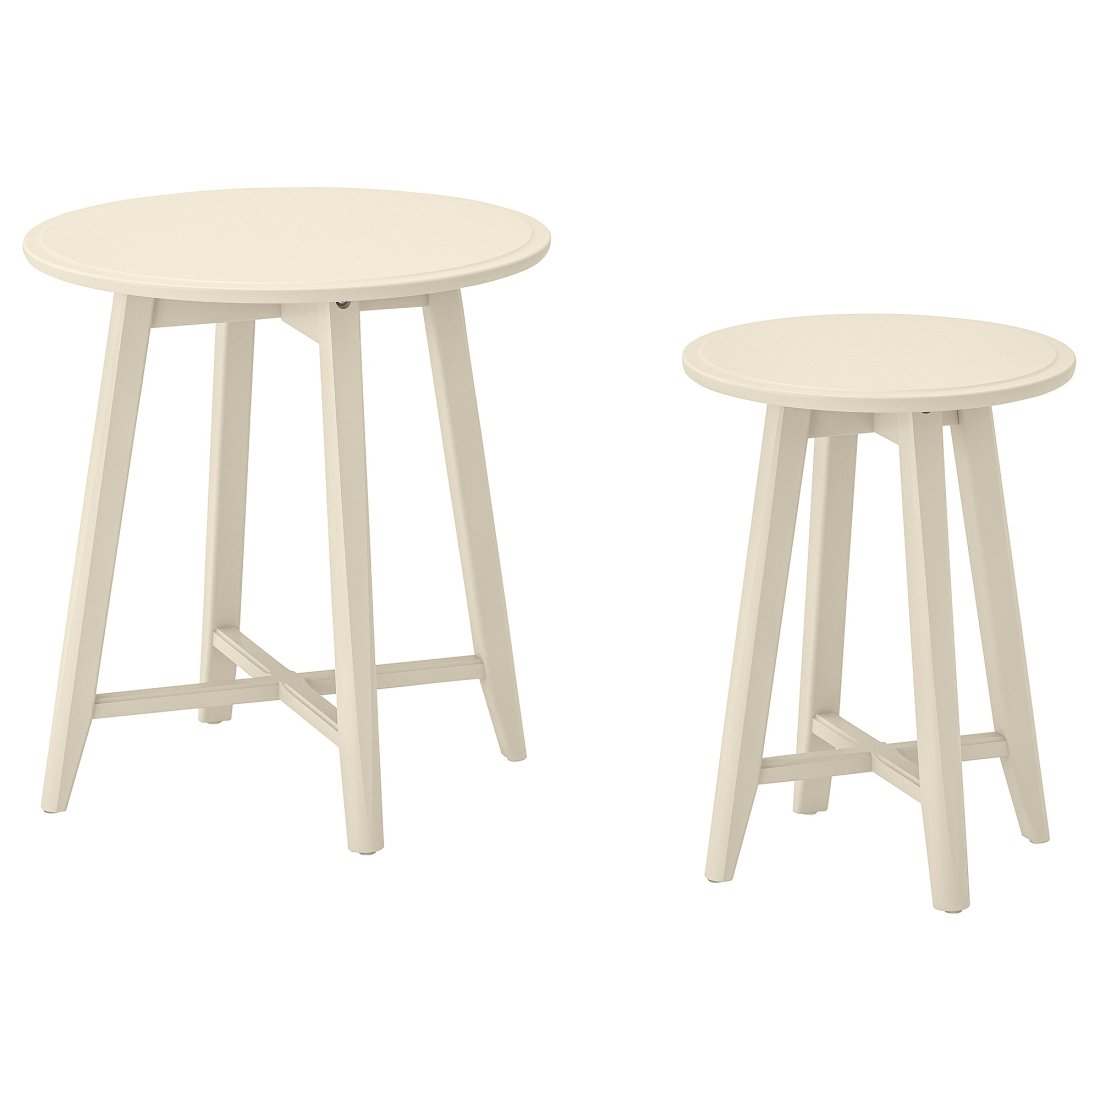 KRAGSTA IKEA set of 2 side tables beige